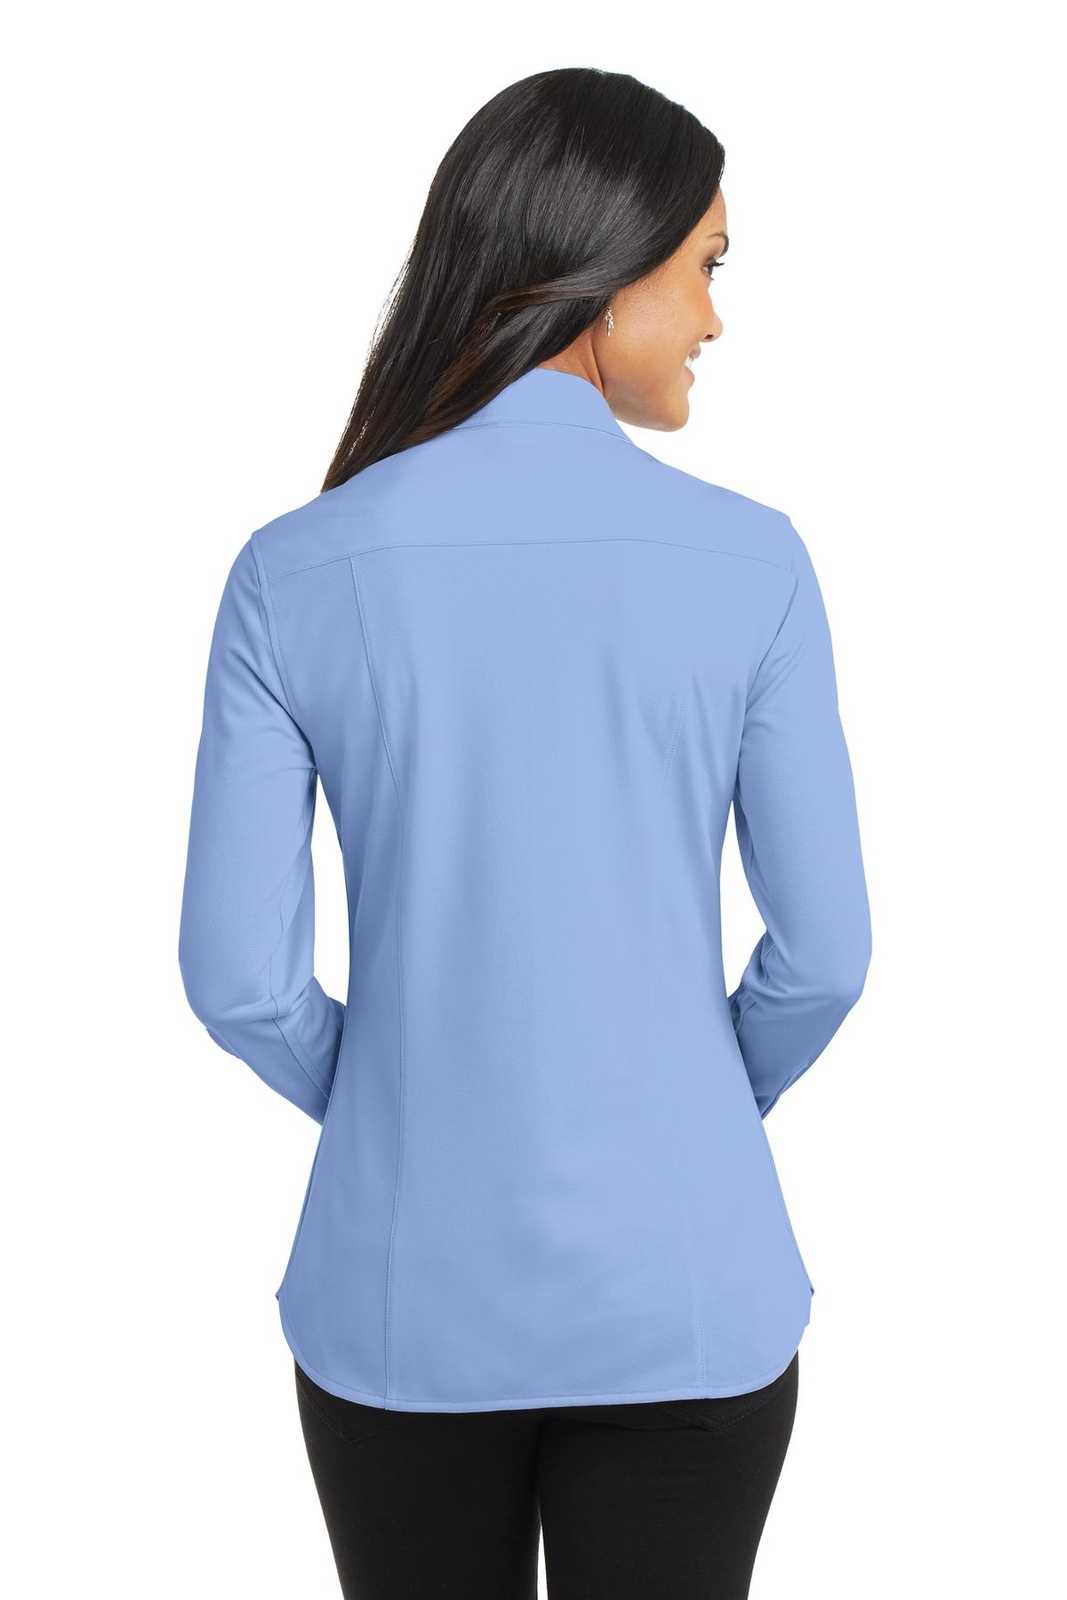 Port Authority L570 Ladies Dimension Knit Dress Shirt - Dress Shirt Blue - HIT a Double - 2